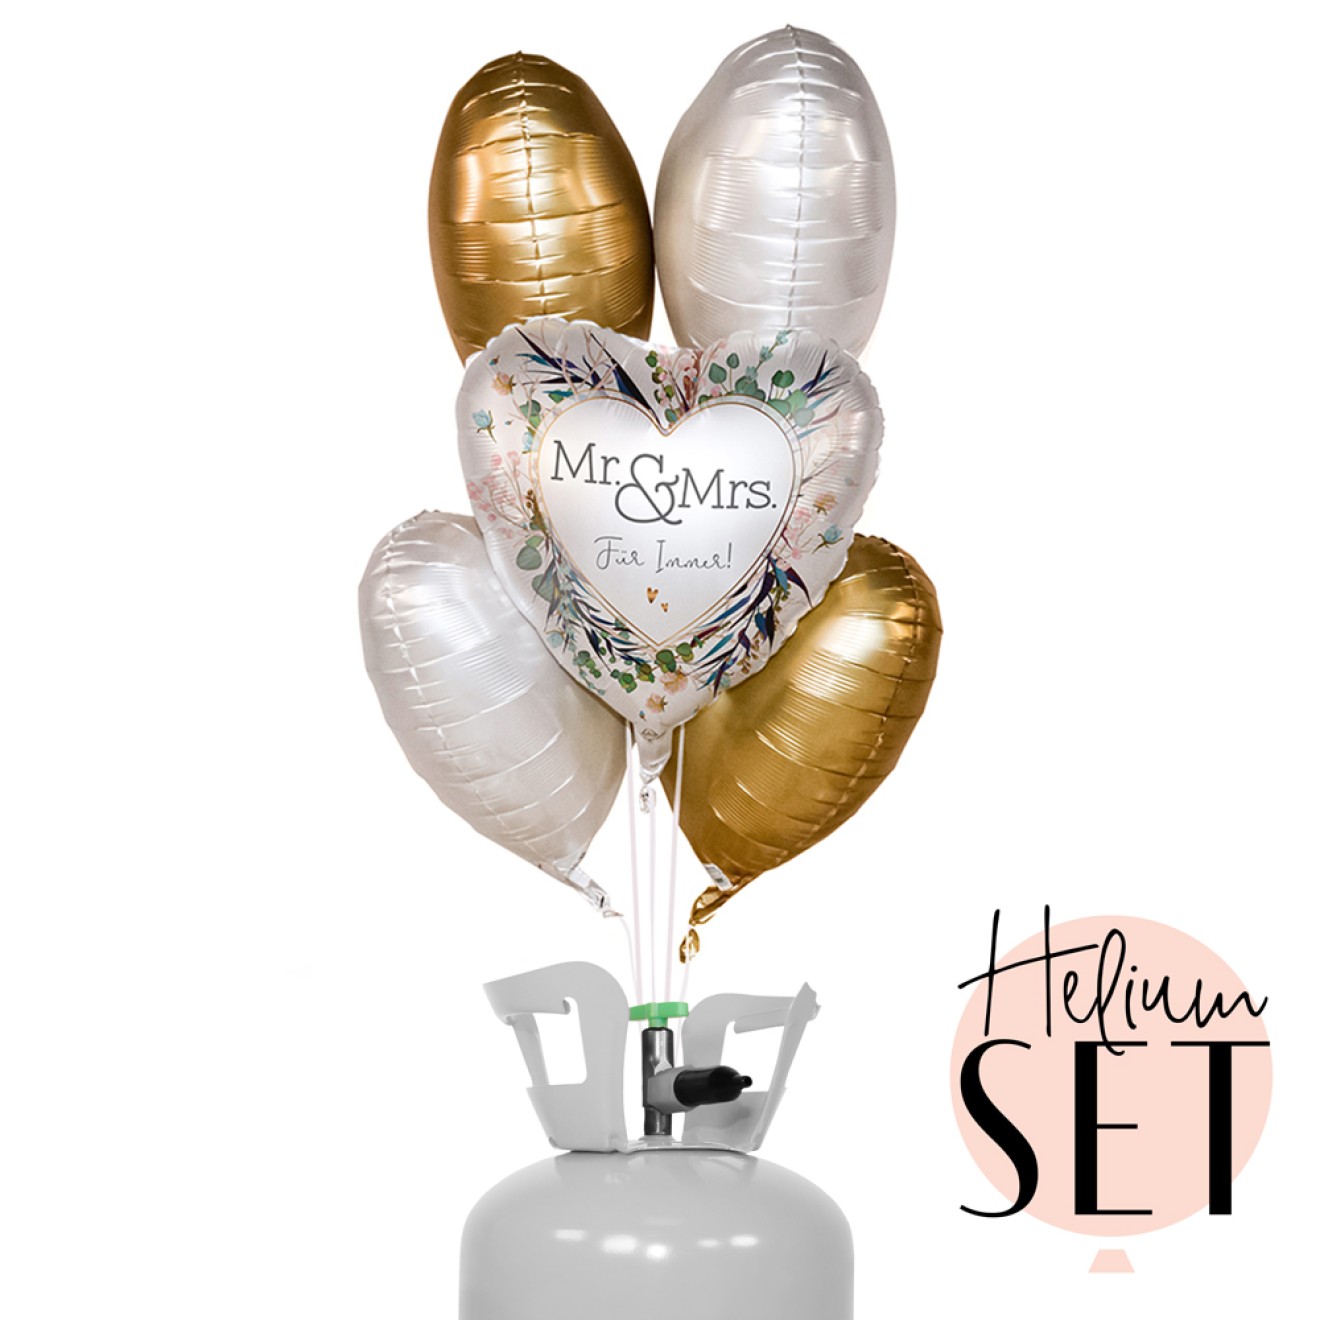 Helium Set - Mr. & Mrs.